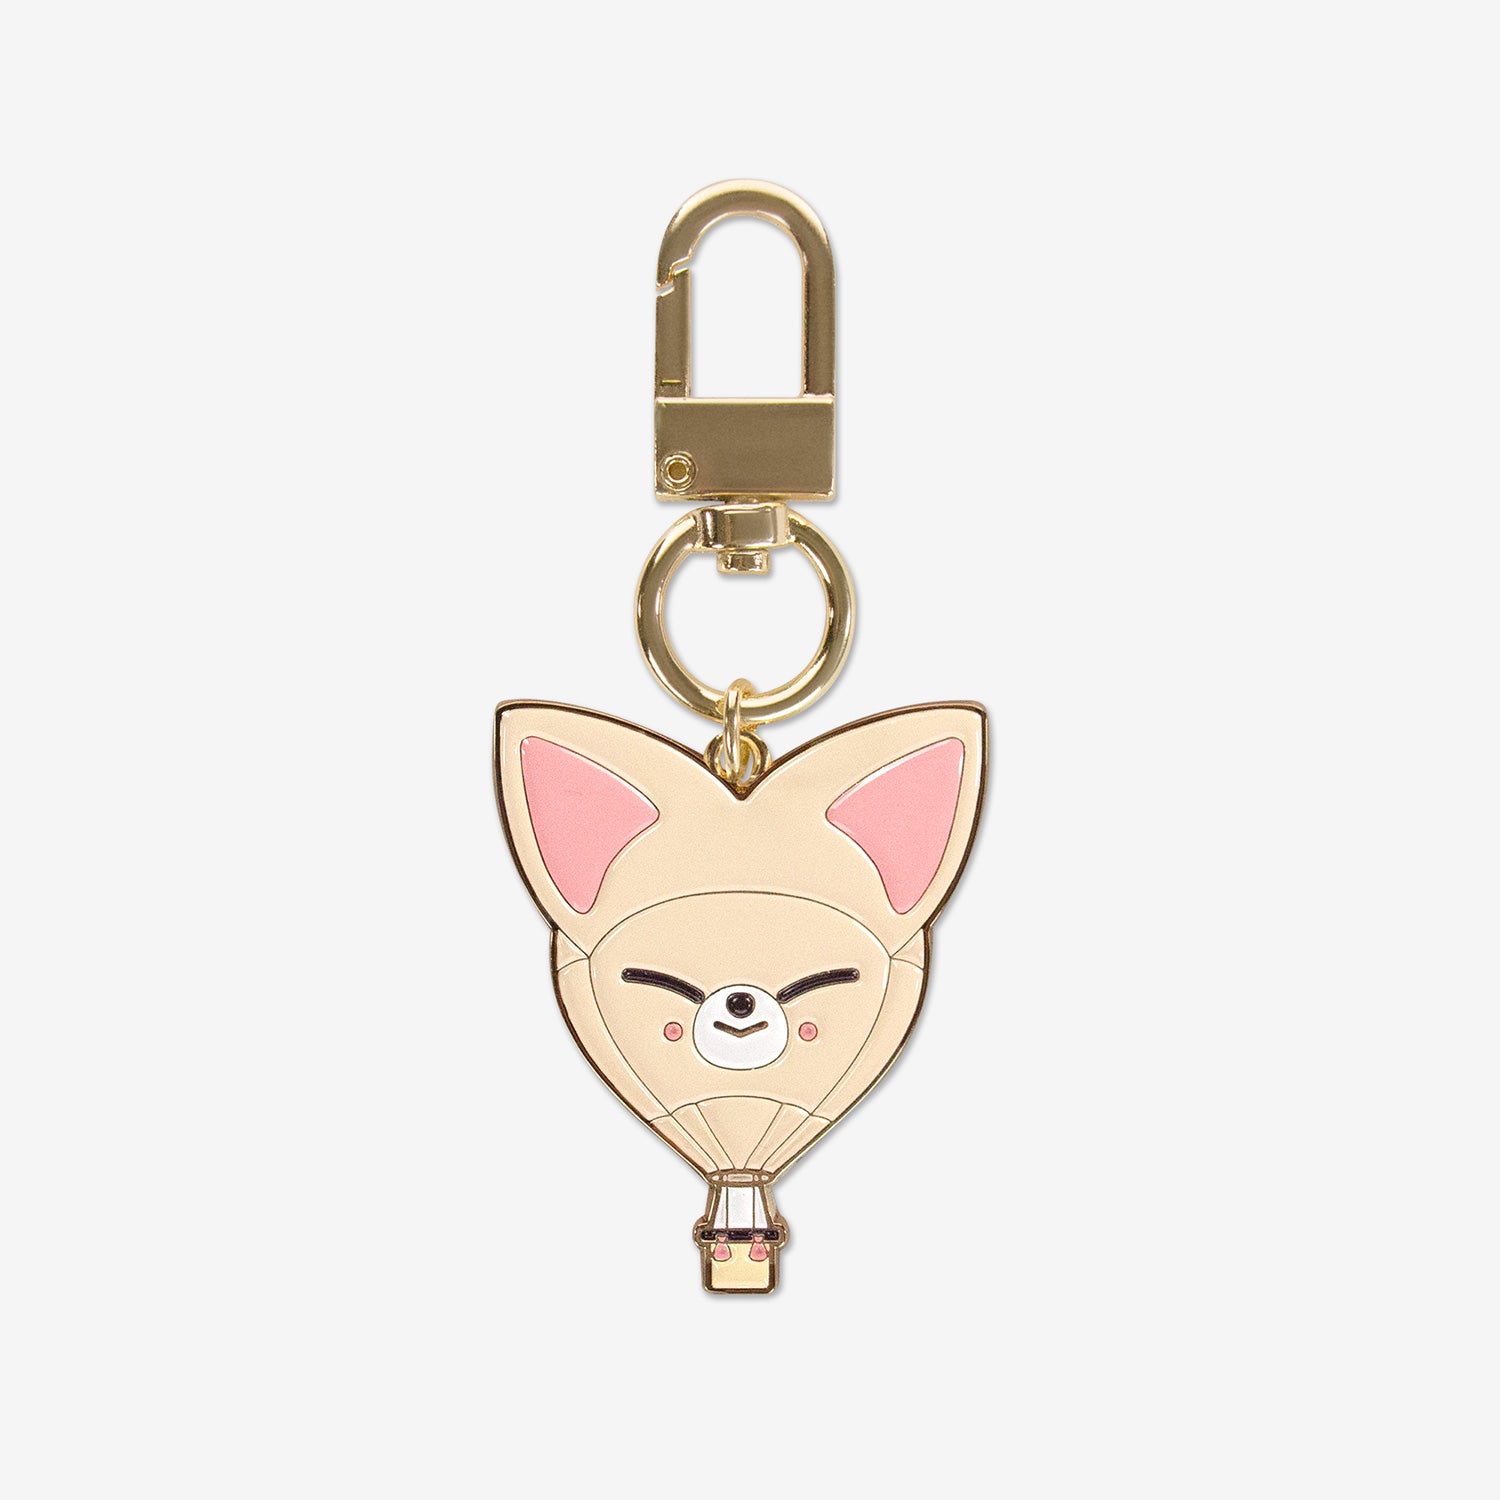 Louis Vuitton Cute Fox Bag Charm and Key Holder